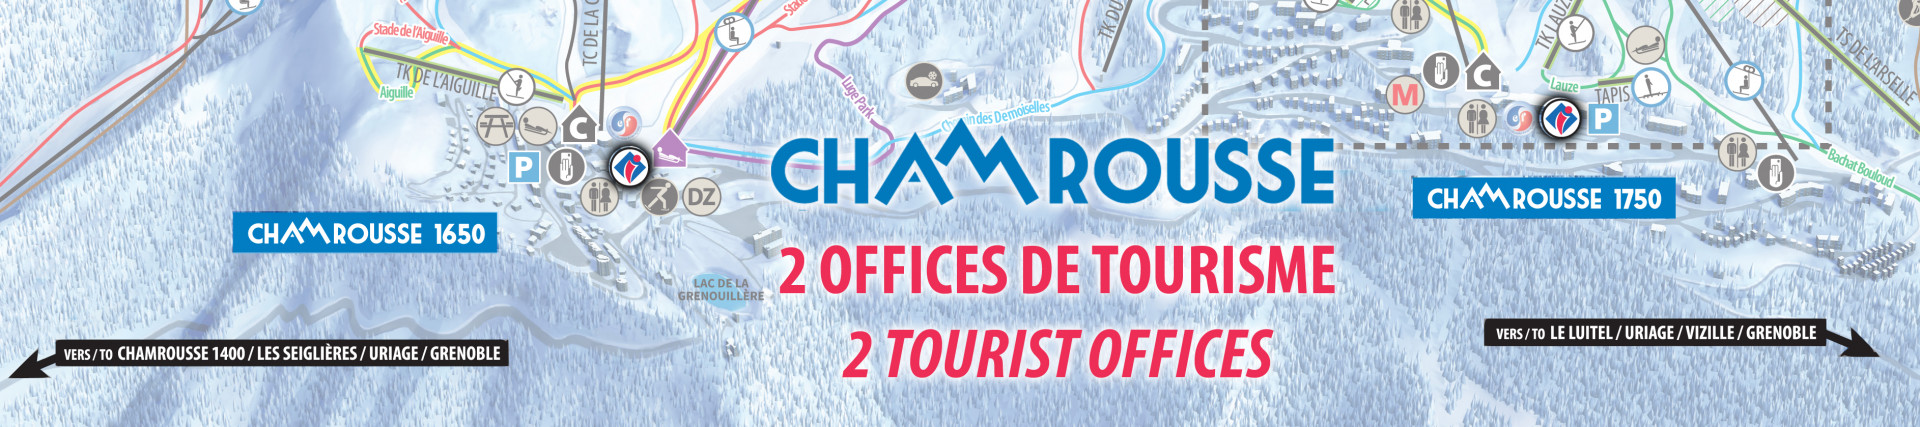 Tourismusbüro Chamrousse 1650 1750 Karte Skigebiet grenoble isere französische alpen frankreich